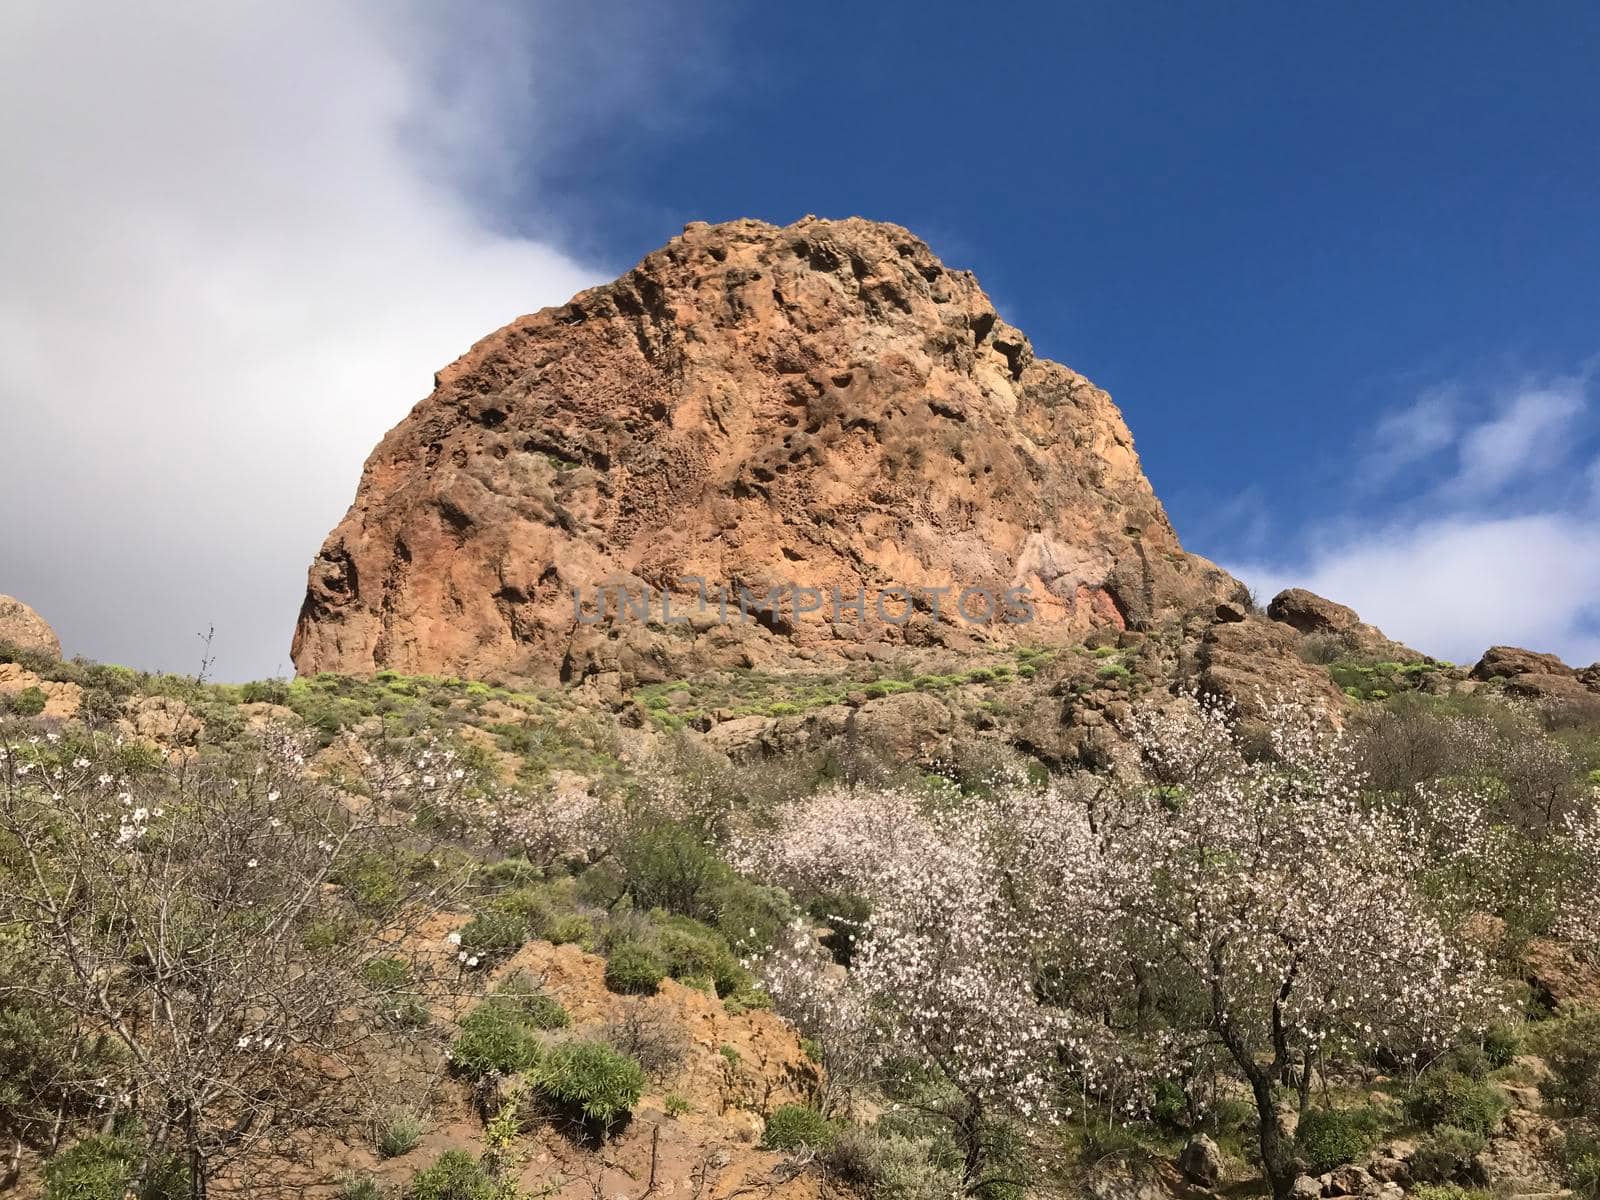 Big rock at Riscos de Tirajana in Gran Canaria